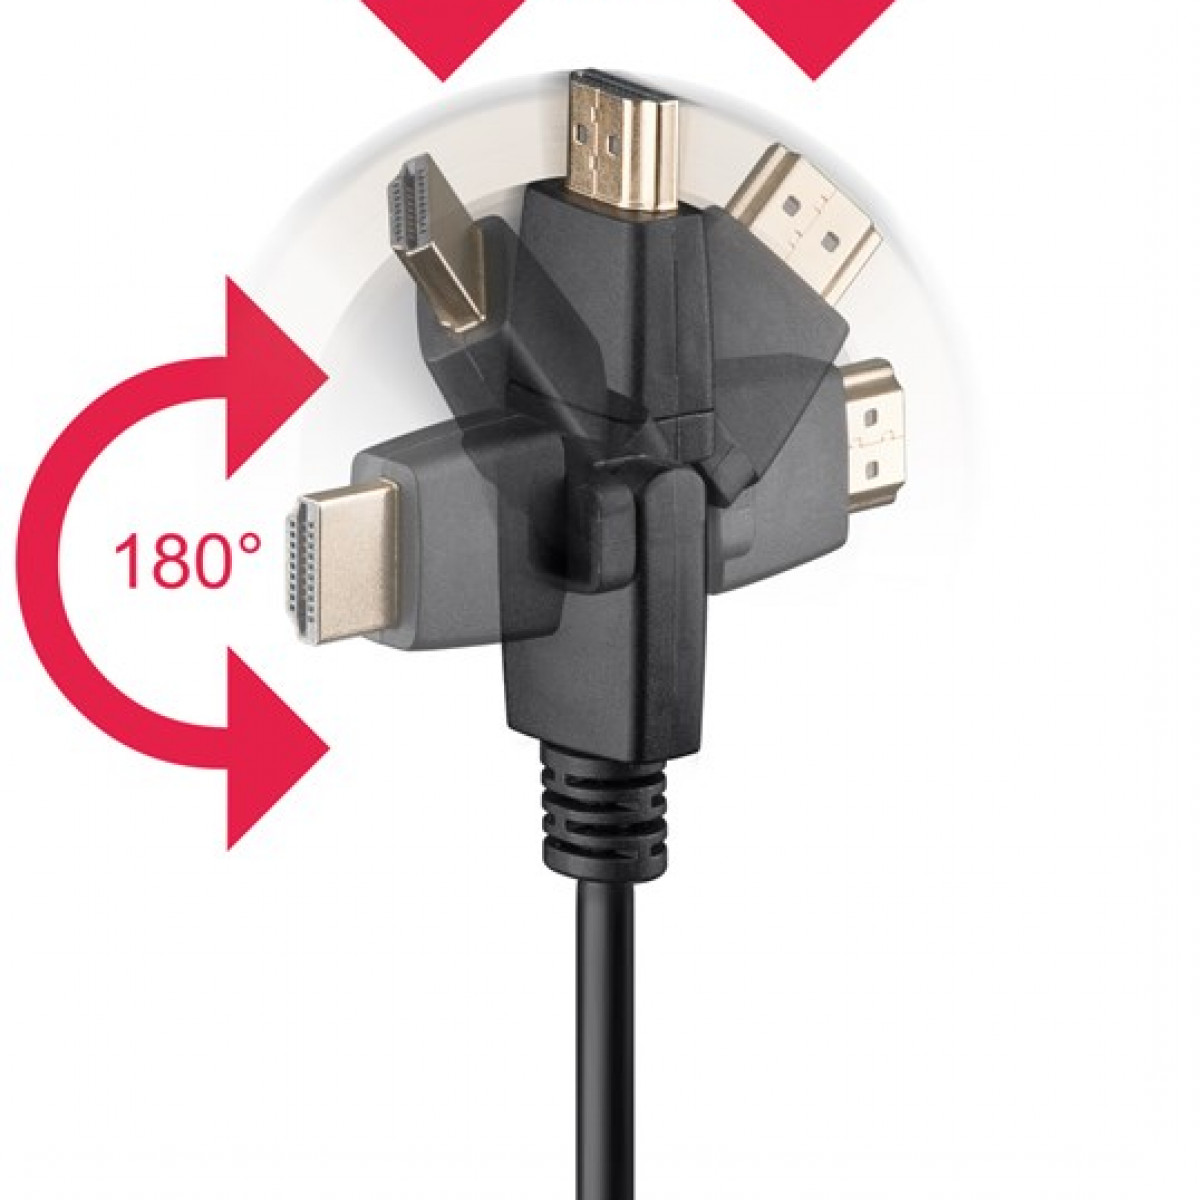 GOOBAY High-Speed-HDMI™-360°-Kabel mit HDMI Kabel Ethernet